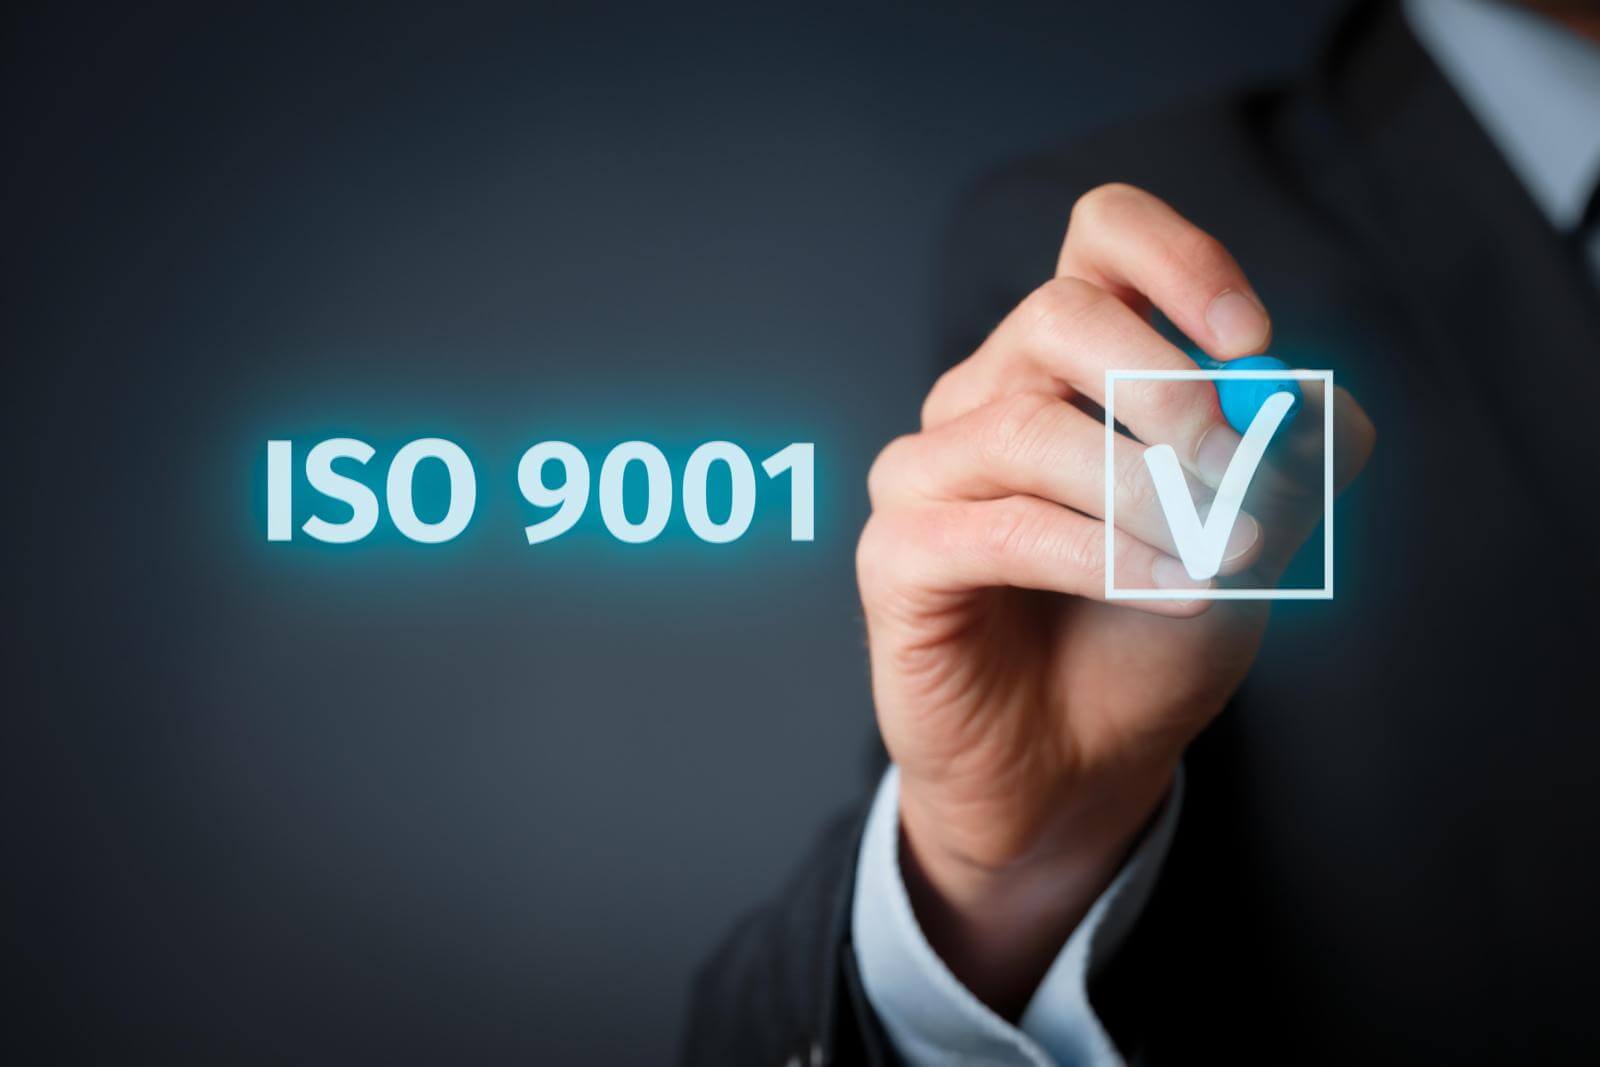 Ist die ISO 9001:2008 noch gültig?